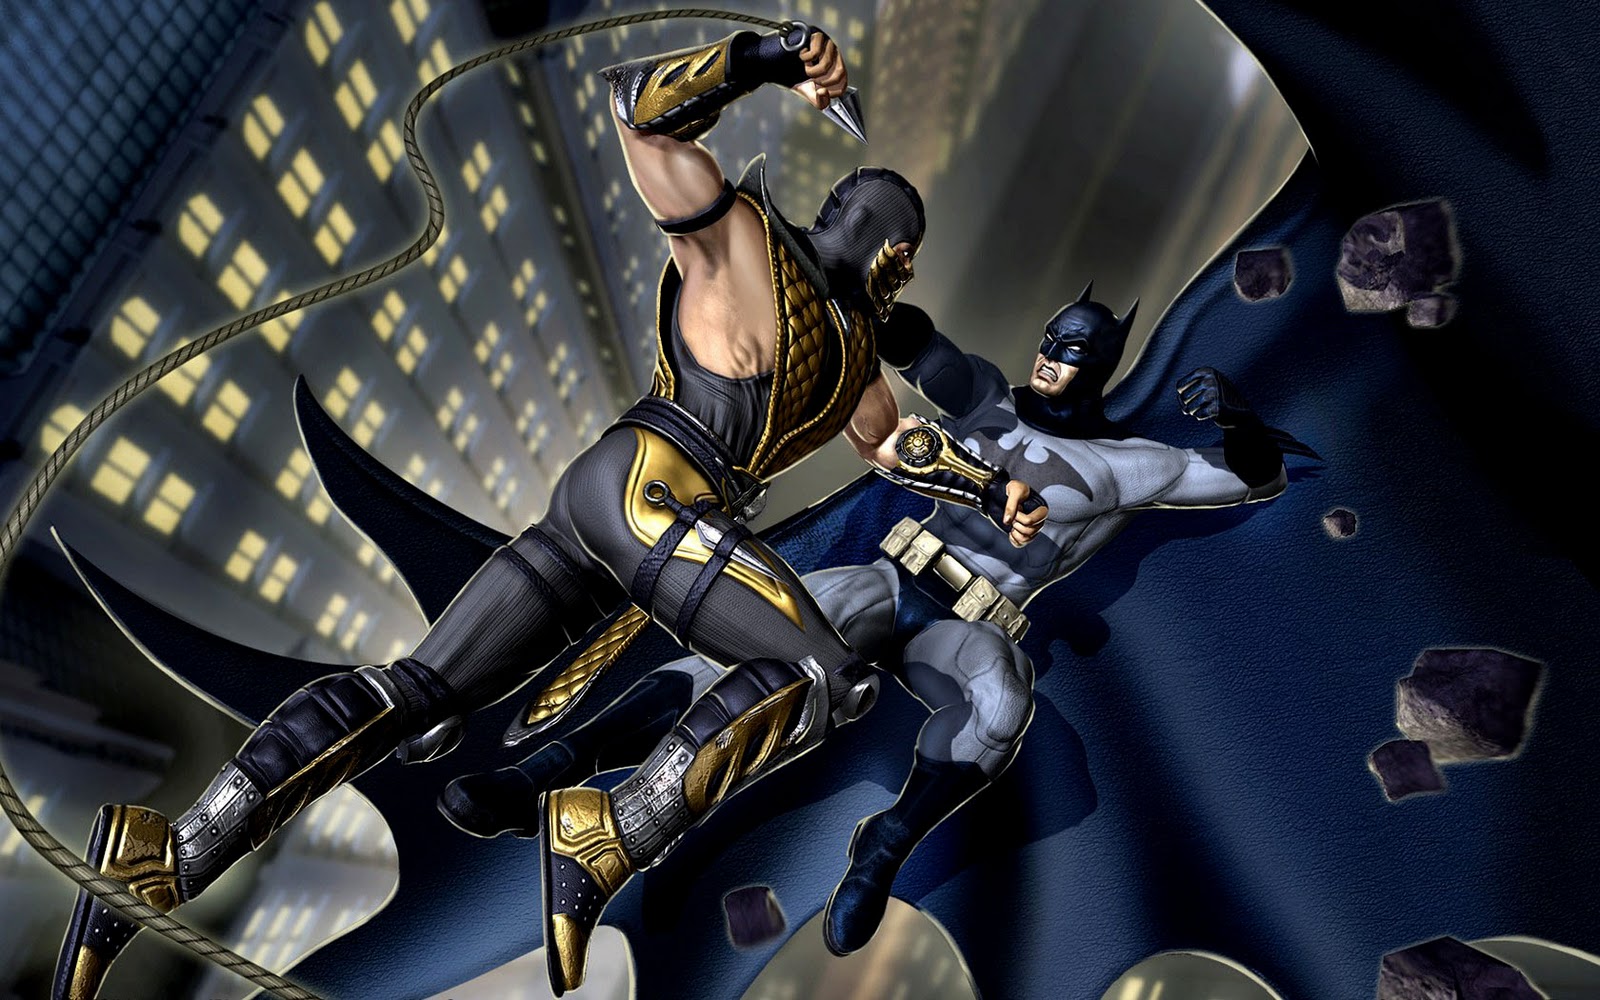 http://1.bp.blogspot.com/-2Mq2CoyMOOA/TnXo3BukPvI/AAAAAAAADHU/IQpQ6Katets/s1600/Mortal_Combat_vs_DC_Universe_Batman_HD_Wallpaper_Vvallpaper.NET.jpg